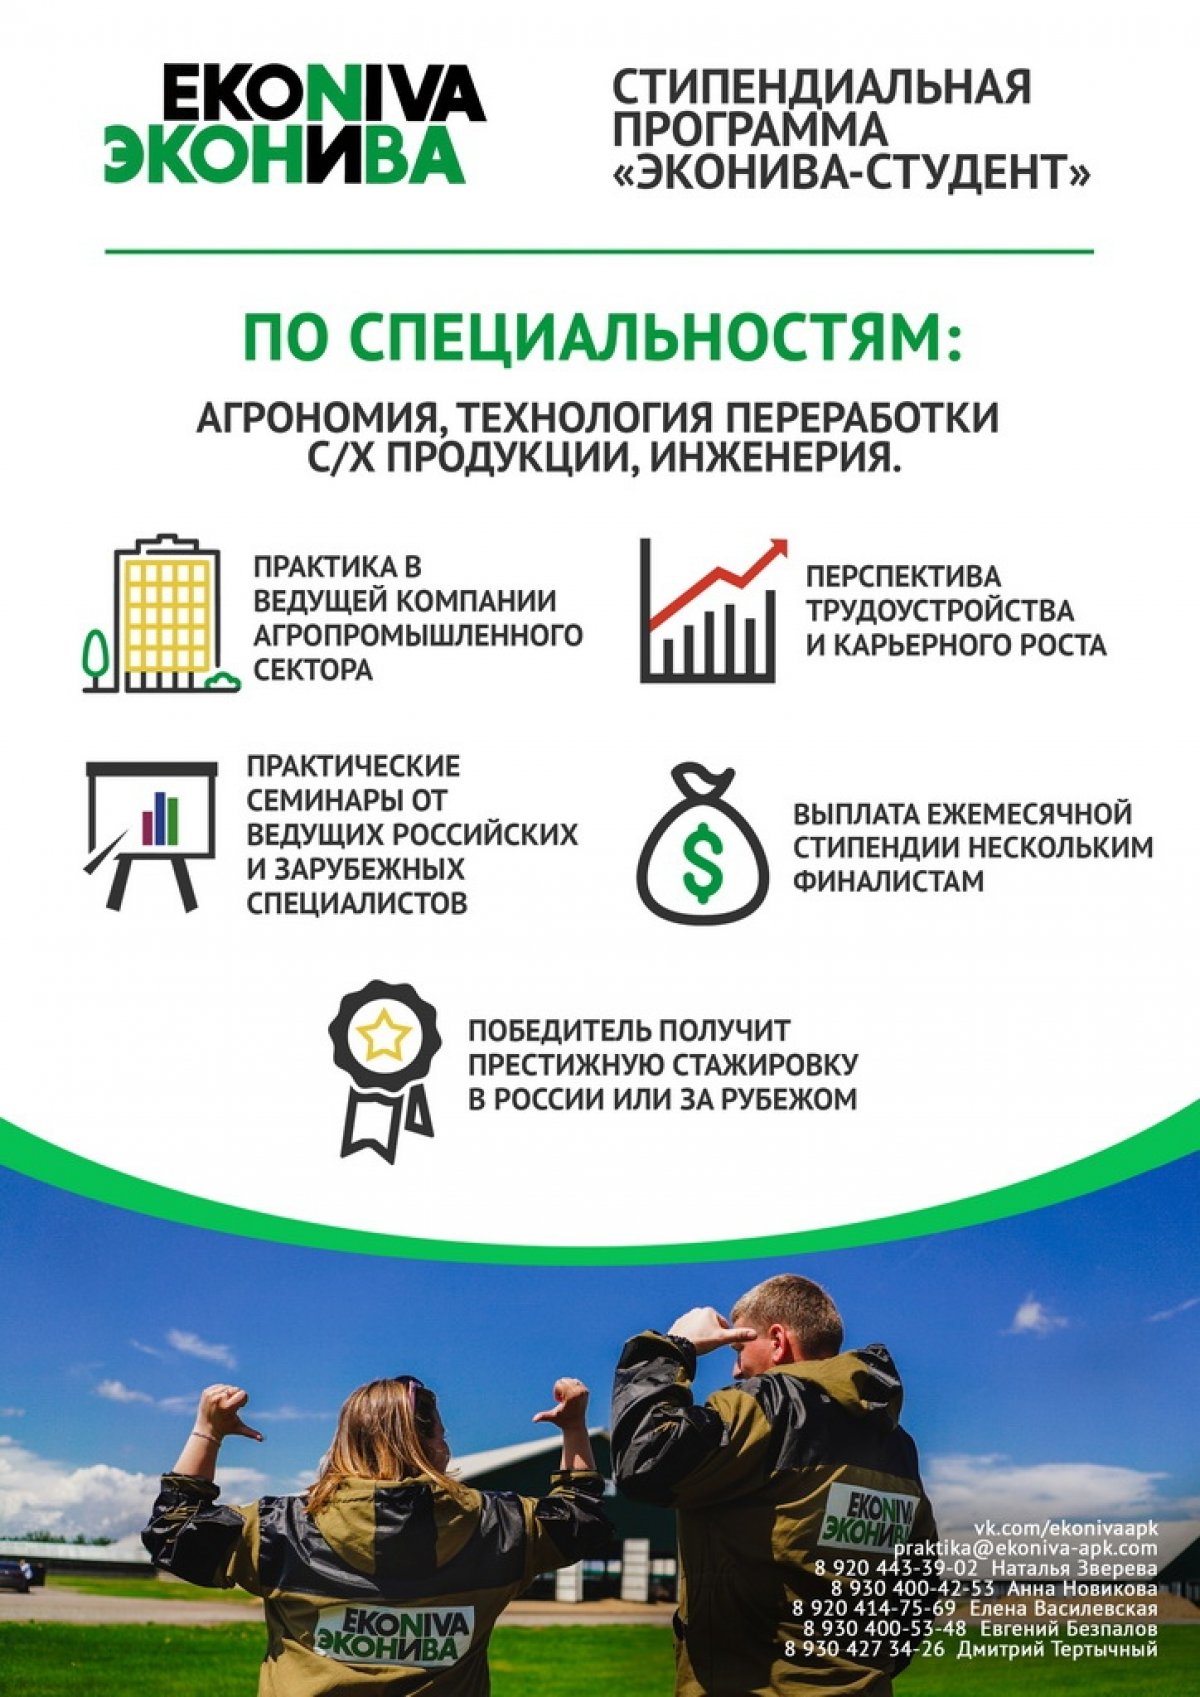 Студенты аграрных вузов могут принять участие в стипендиальных программах одного из лидеров российского АПК